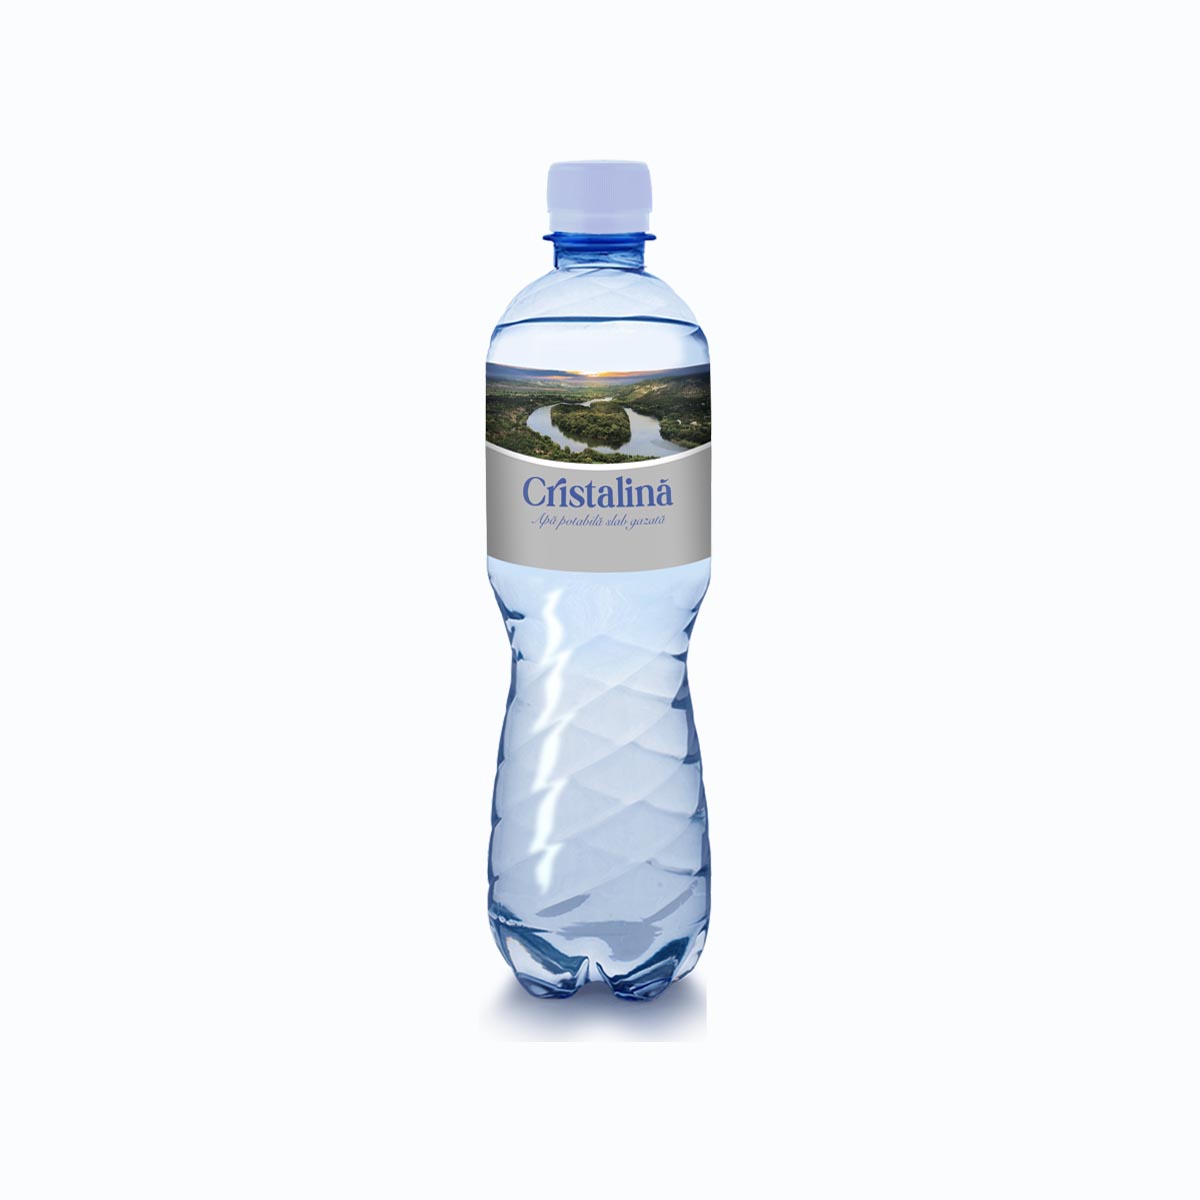 Вода белая бутылка магазина. Вода питьевая la nature 1.5 л слабогазиров. Бонаково питьевая вода газированная пол-литра. Apa cristalina 3 l. Бутилированная вода спб